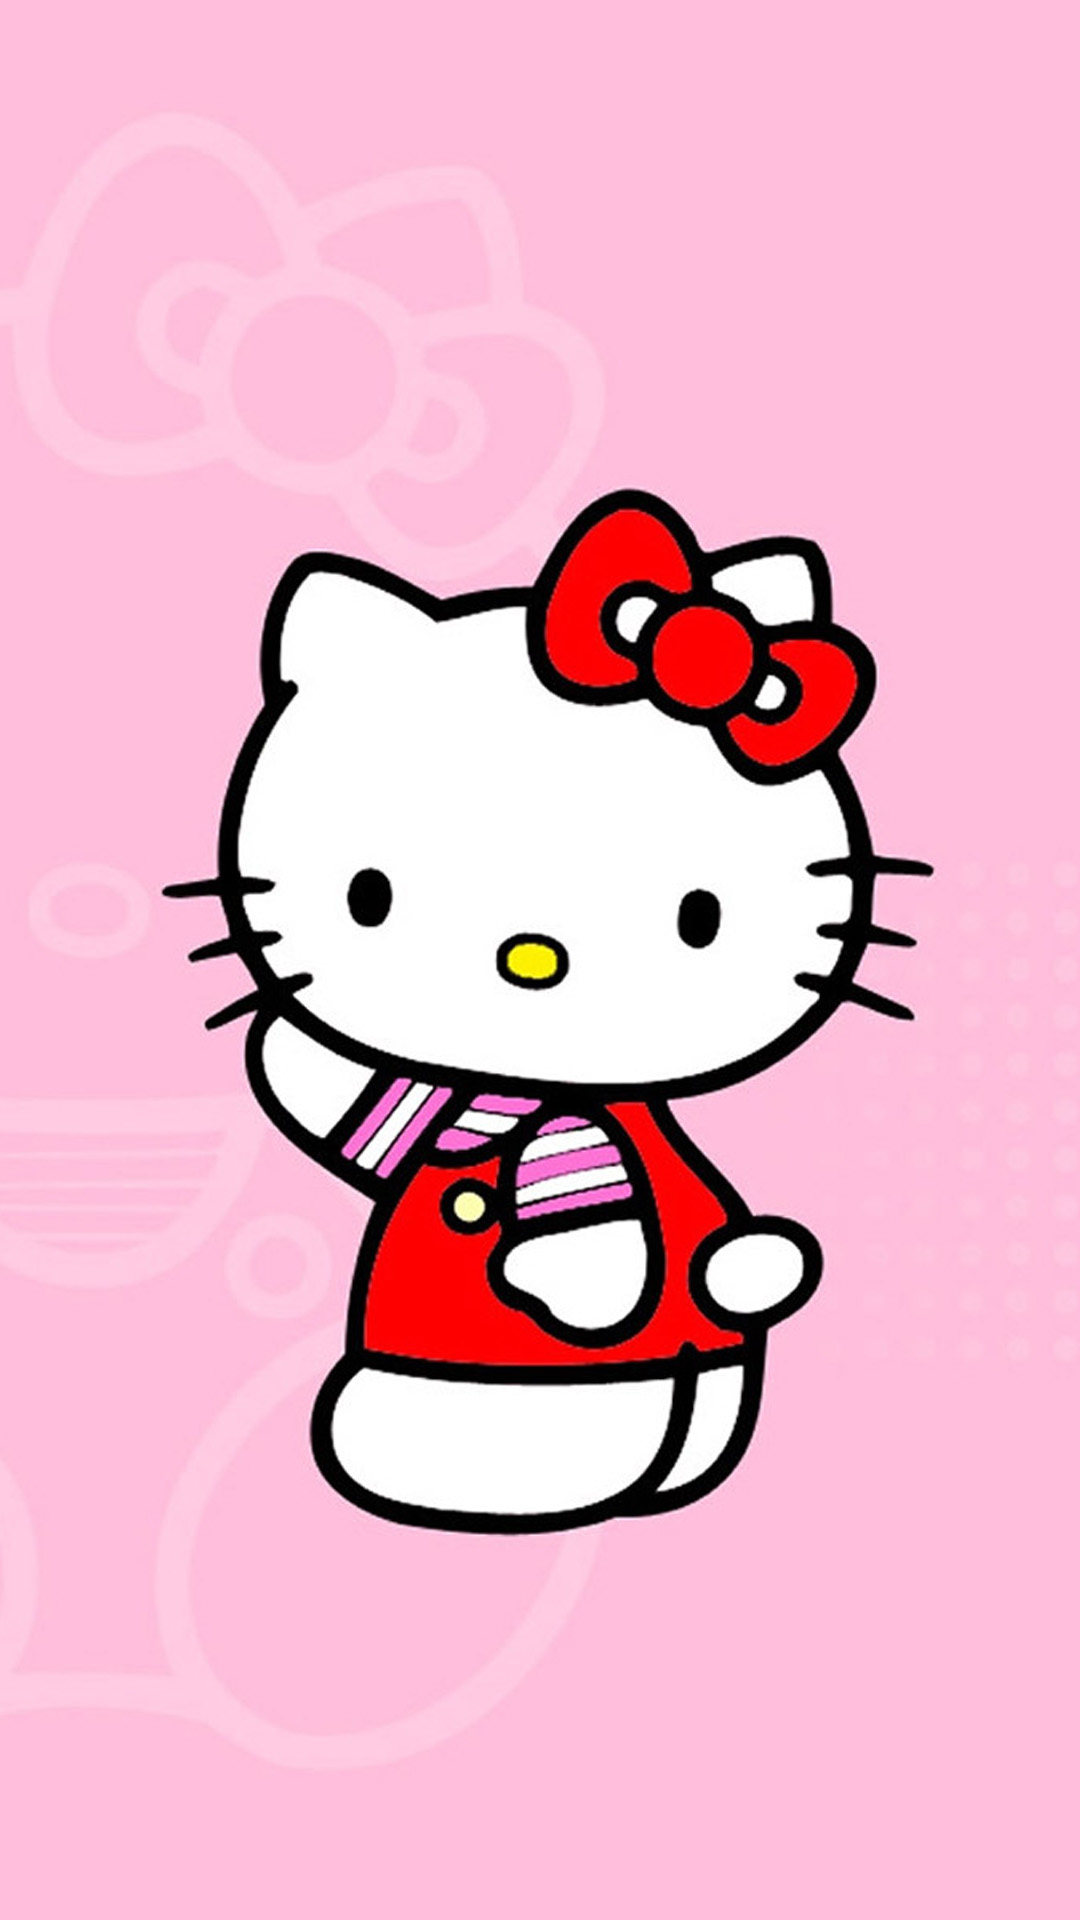 Bạn là một fan của Hello Kitty? Đây là cơ hội tuyệt vời để nạp lại tình yêu với chú mèo đáng yêu nhất qua bộ sưu tập các hình nền Hello Kitty thú vị. Chúng tôi đảm bảo rằng bạn sẽ không thể cưỡng lại sức hút của những hình nền tràn đầy sắc màu và năng lượng tích cực này!